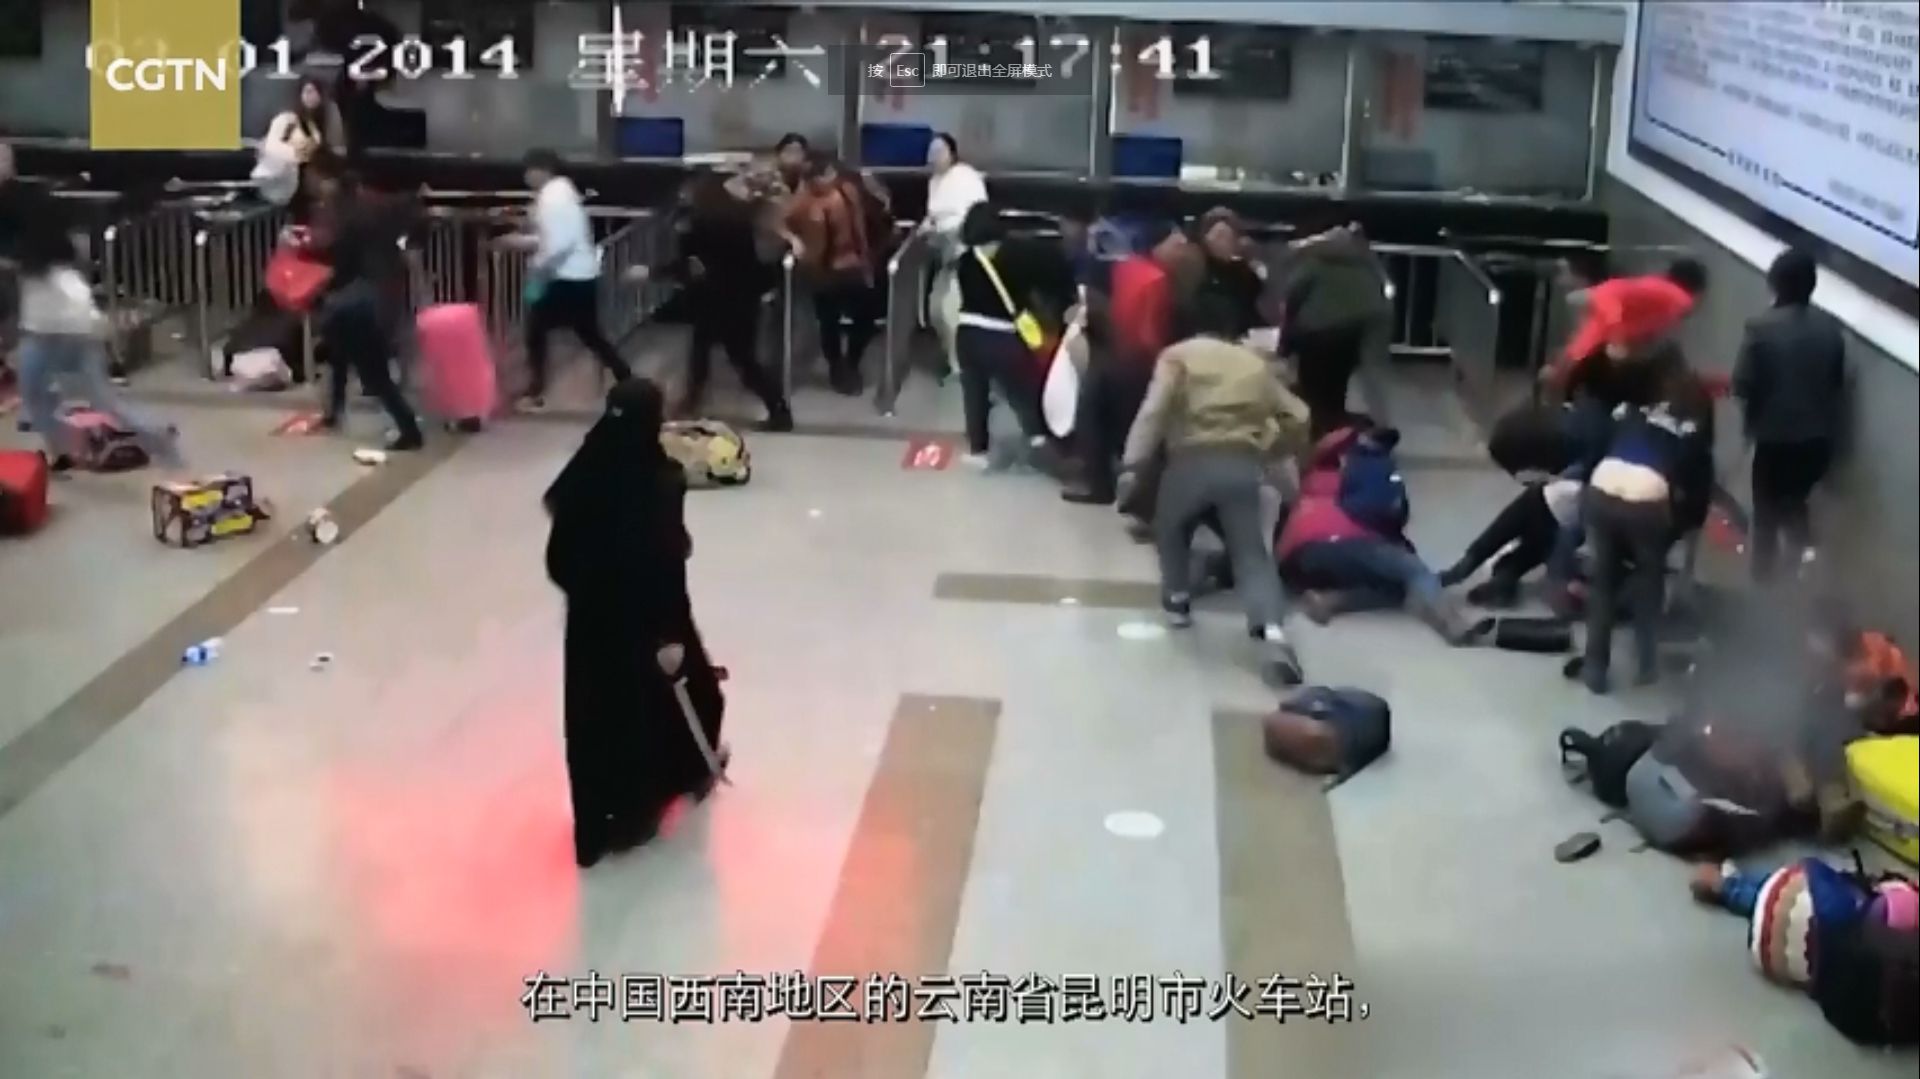 2014年昆明火车站“3·01”暴恐案发生的原始视频。新疆籍恐怖分子持砍刀砍杀民众，造成31人死亡，141人受伤。（CGTN视频截图）